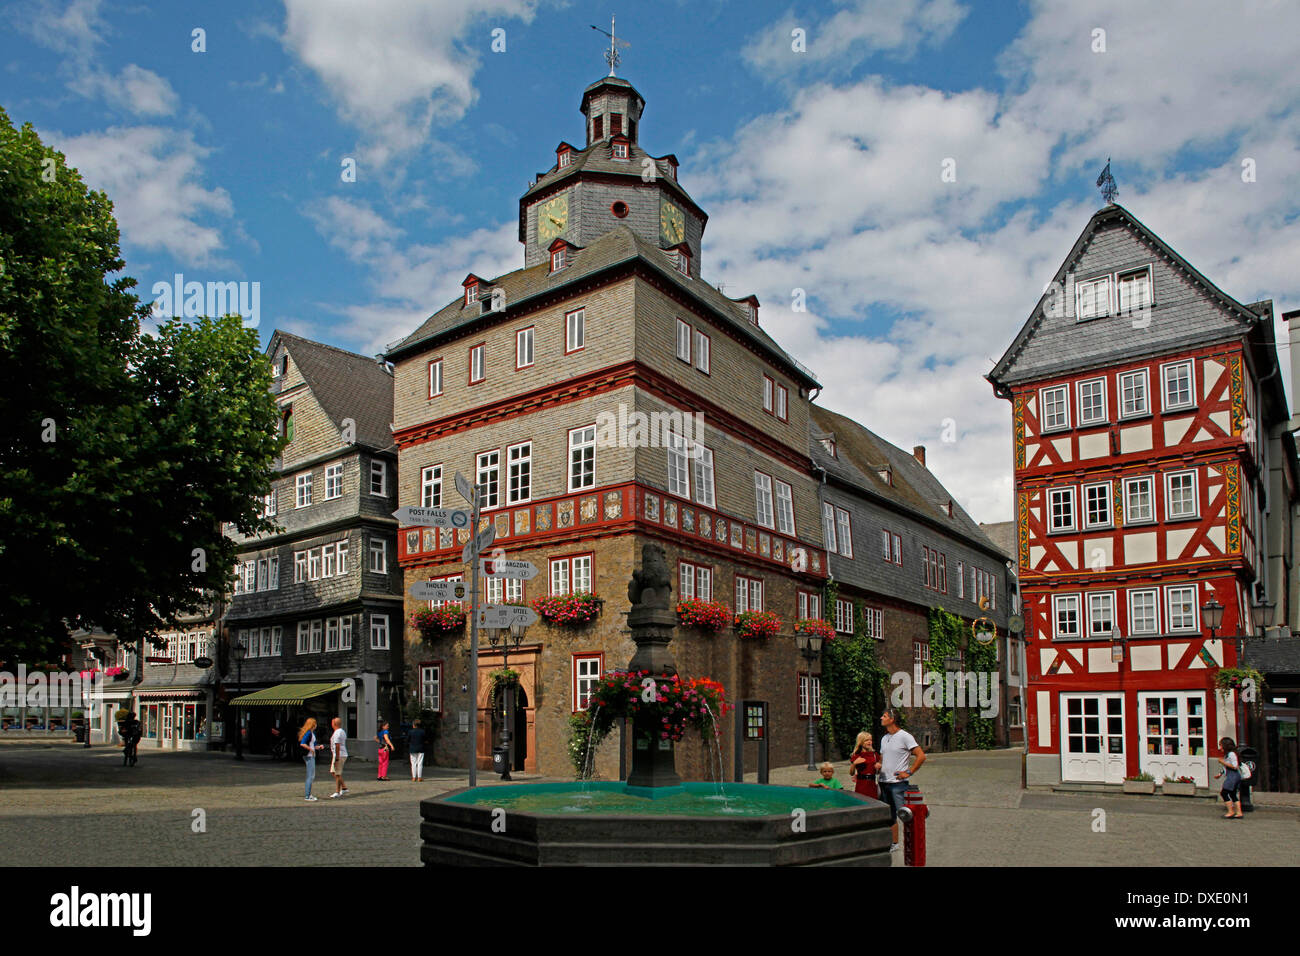 Ancien hôtel de ville construit 1589-91 par Jorg Zaunschliffer fontaine du marché Place du marché quartier Herborn Allemagne Hesse Lahn-Dill-Kreis Banque D'Images